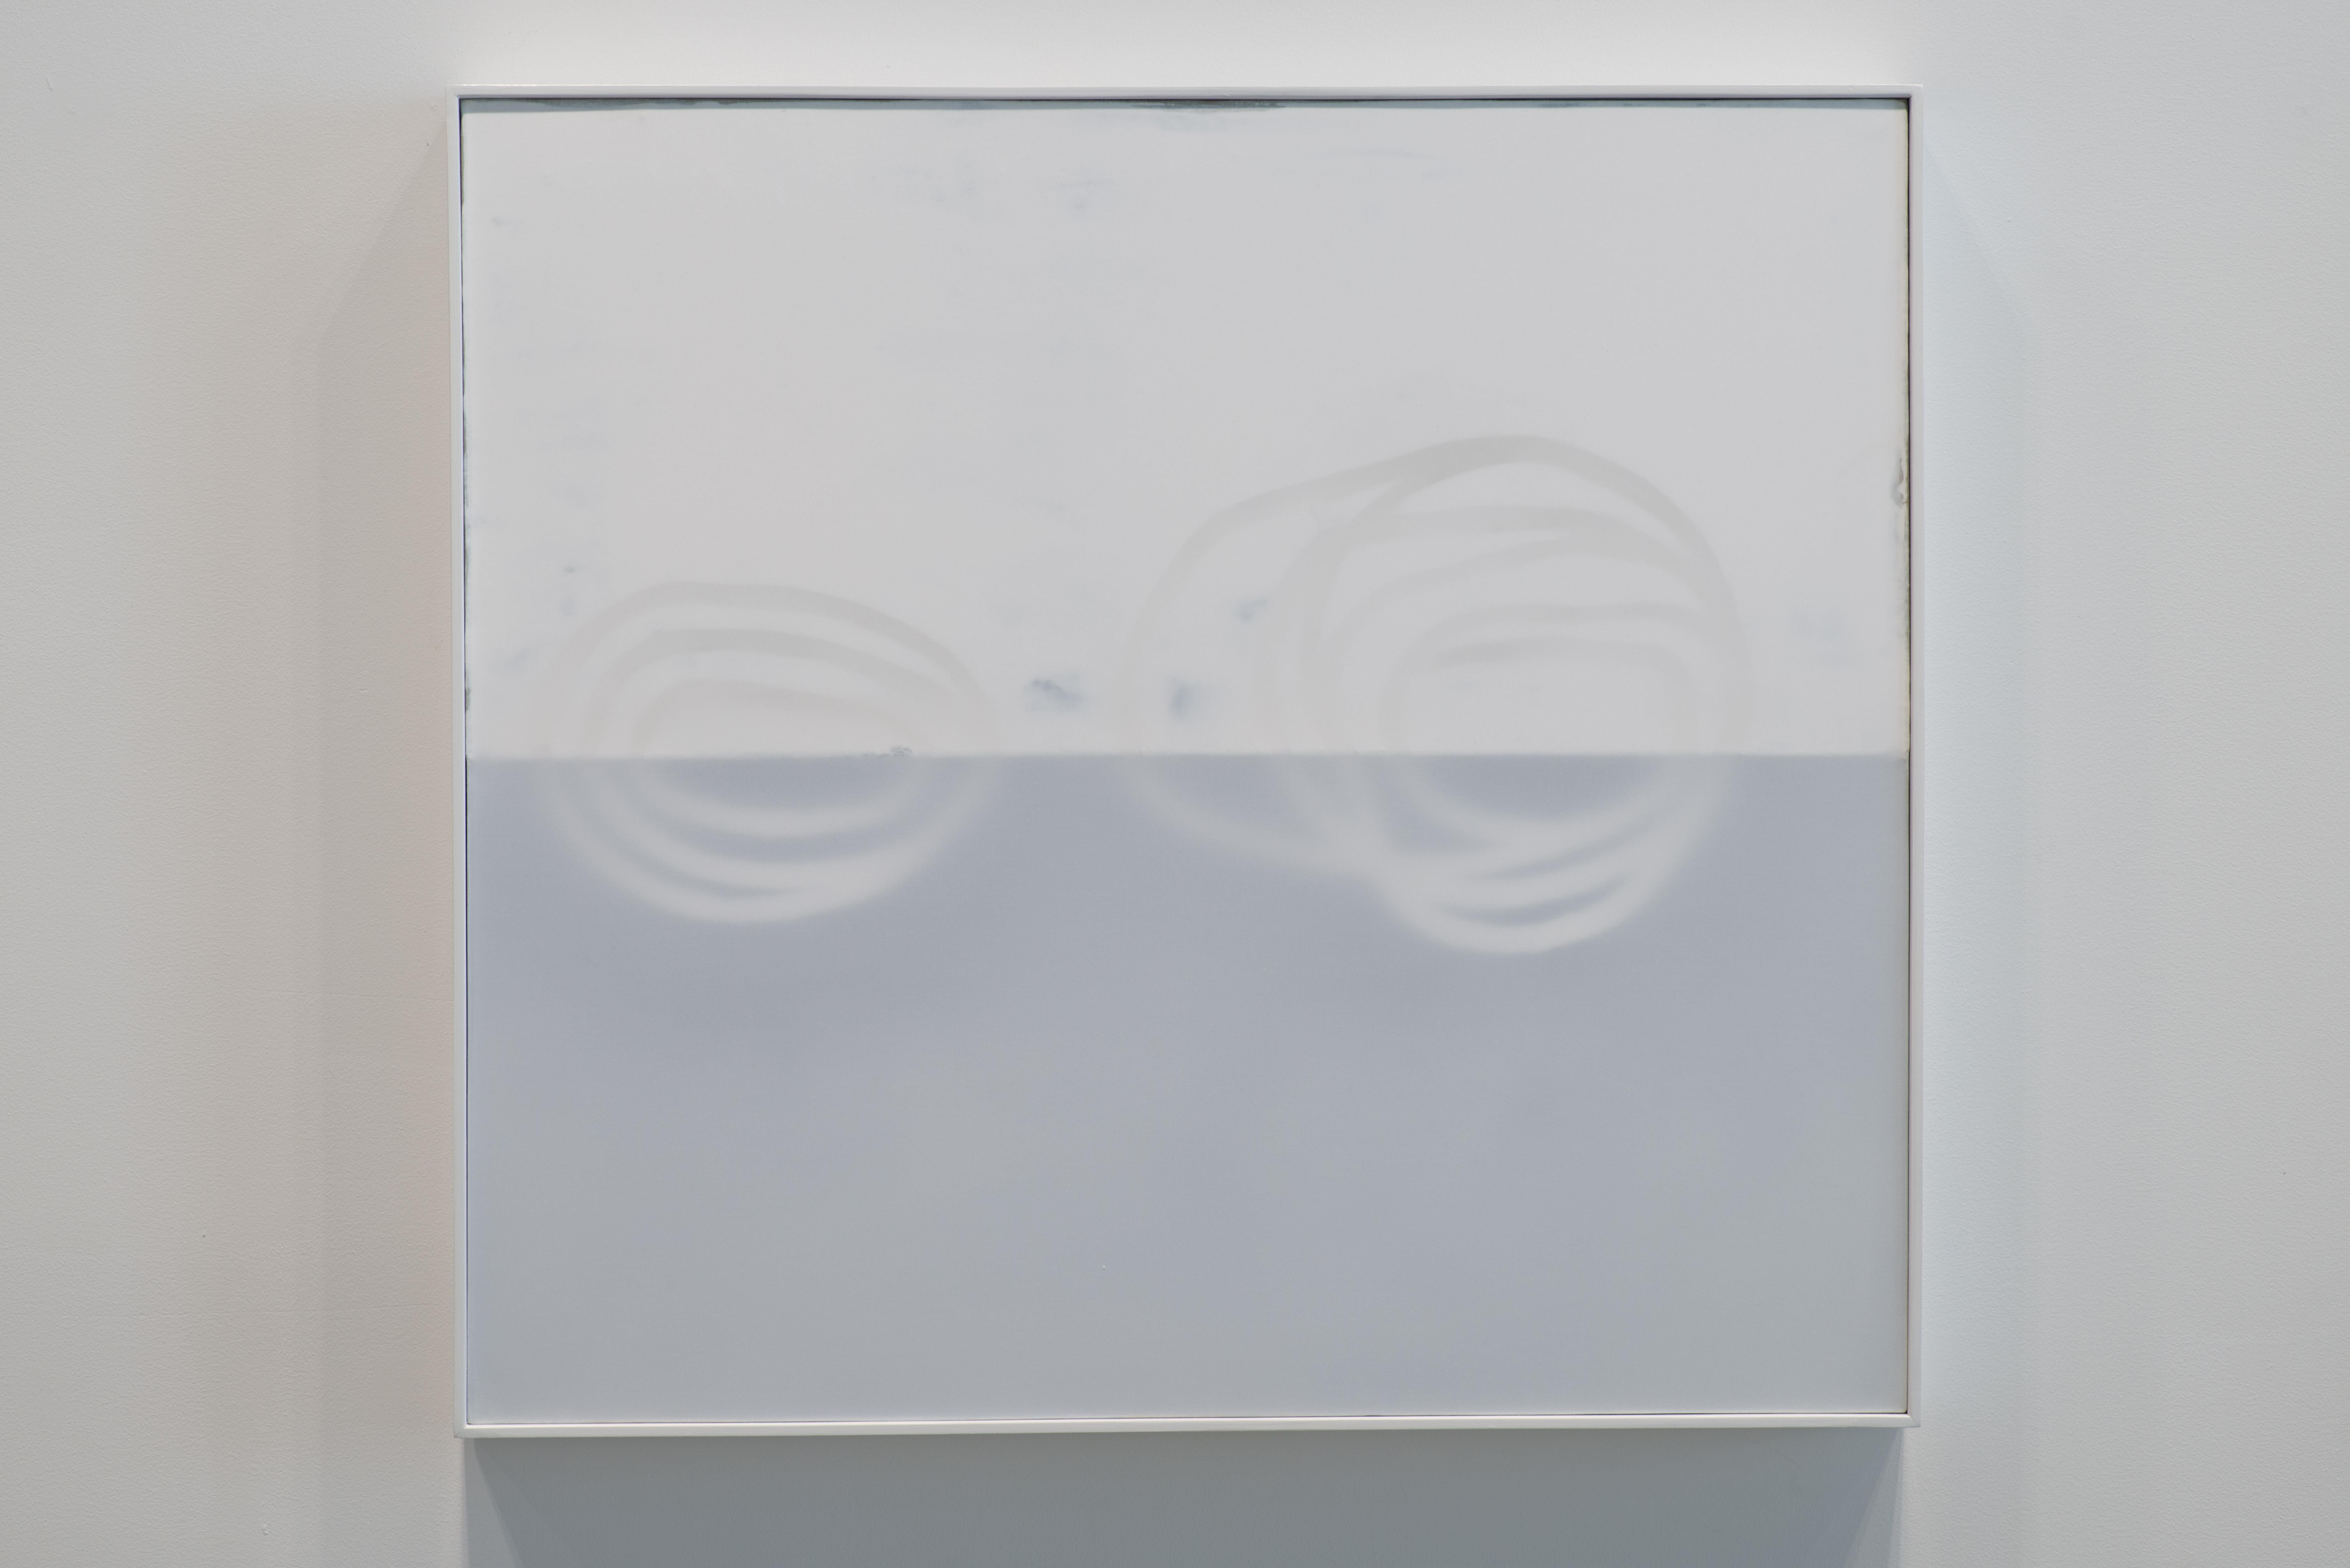 Drive 4, 2022
Technique mixte sur toile
33 x 36 pouces
83.8 x 91,4 cm

Udo Nöger crée des peintures monochromes lumineuses qui capturent la lumière, le mouvement et l'énergie exprimés dans des compositions très minimalistes. Nöger, qui a grandi à